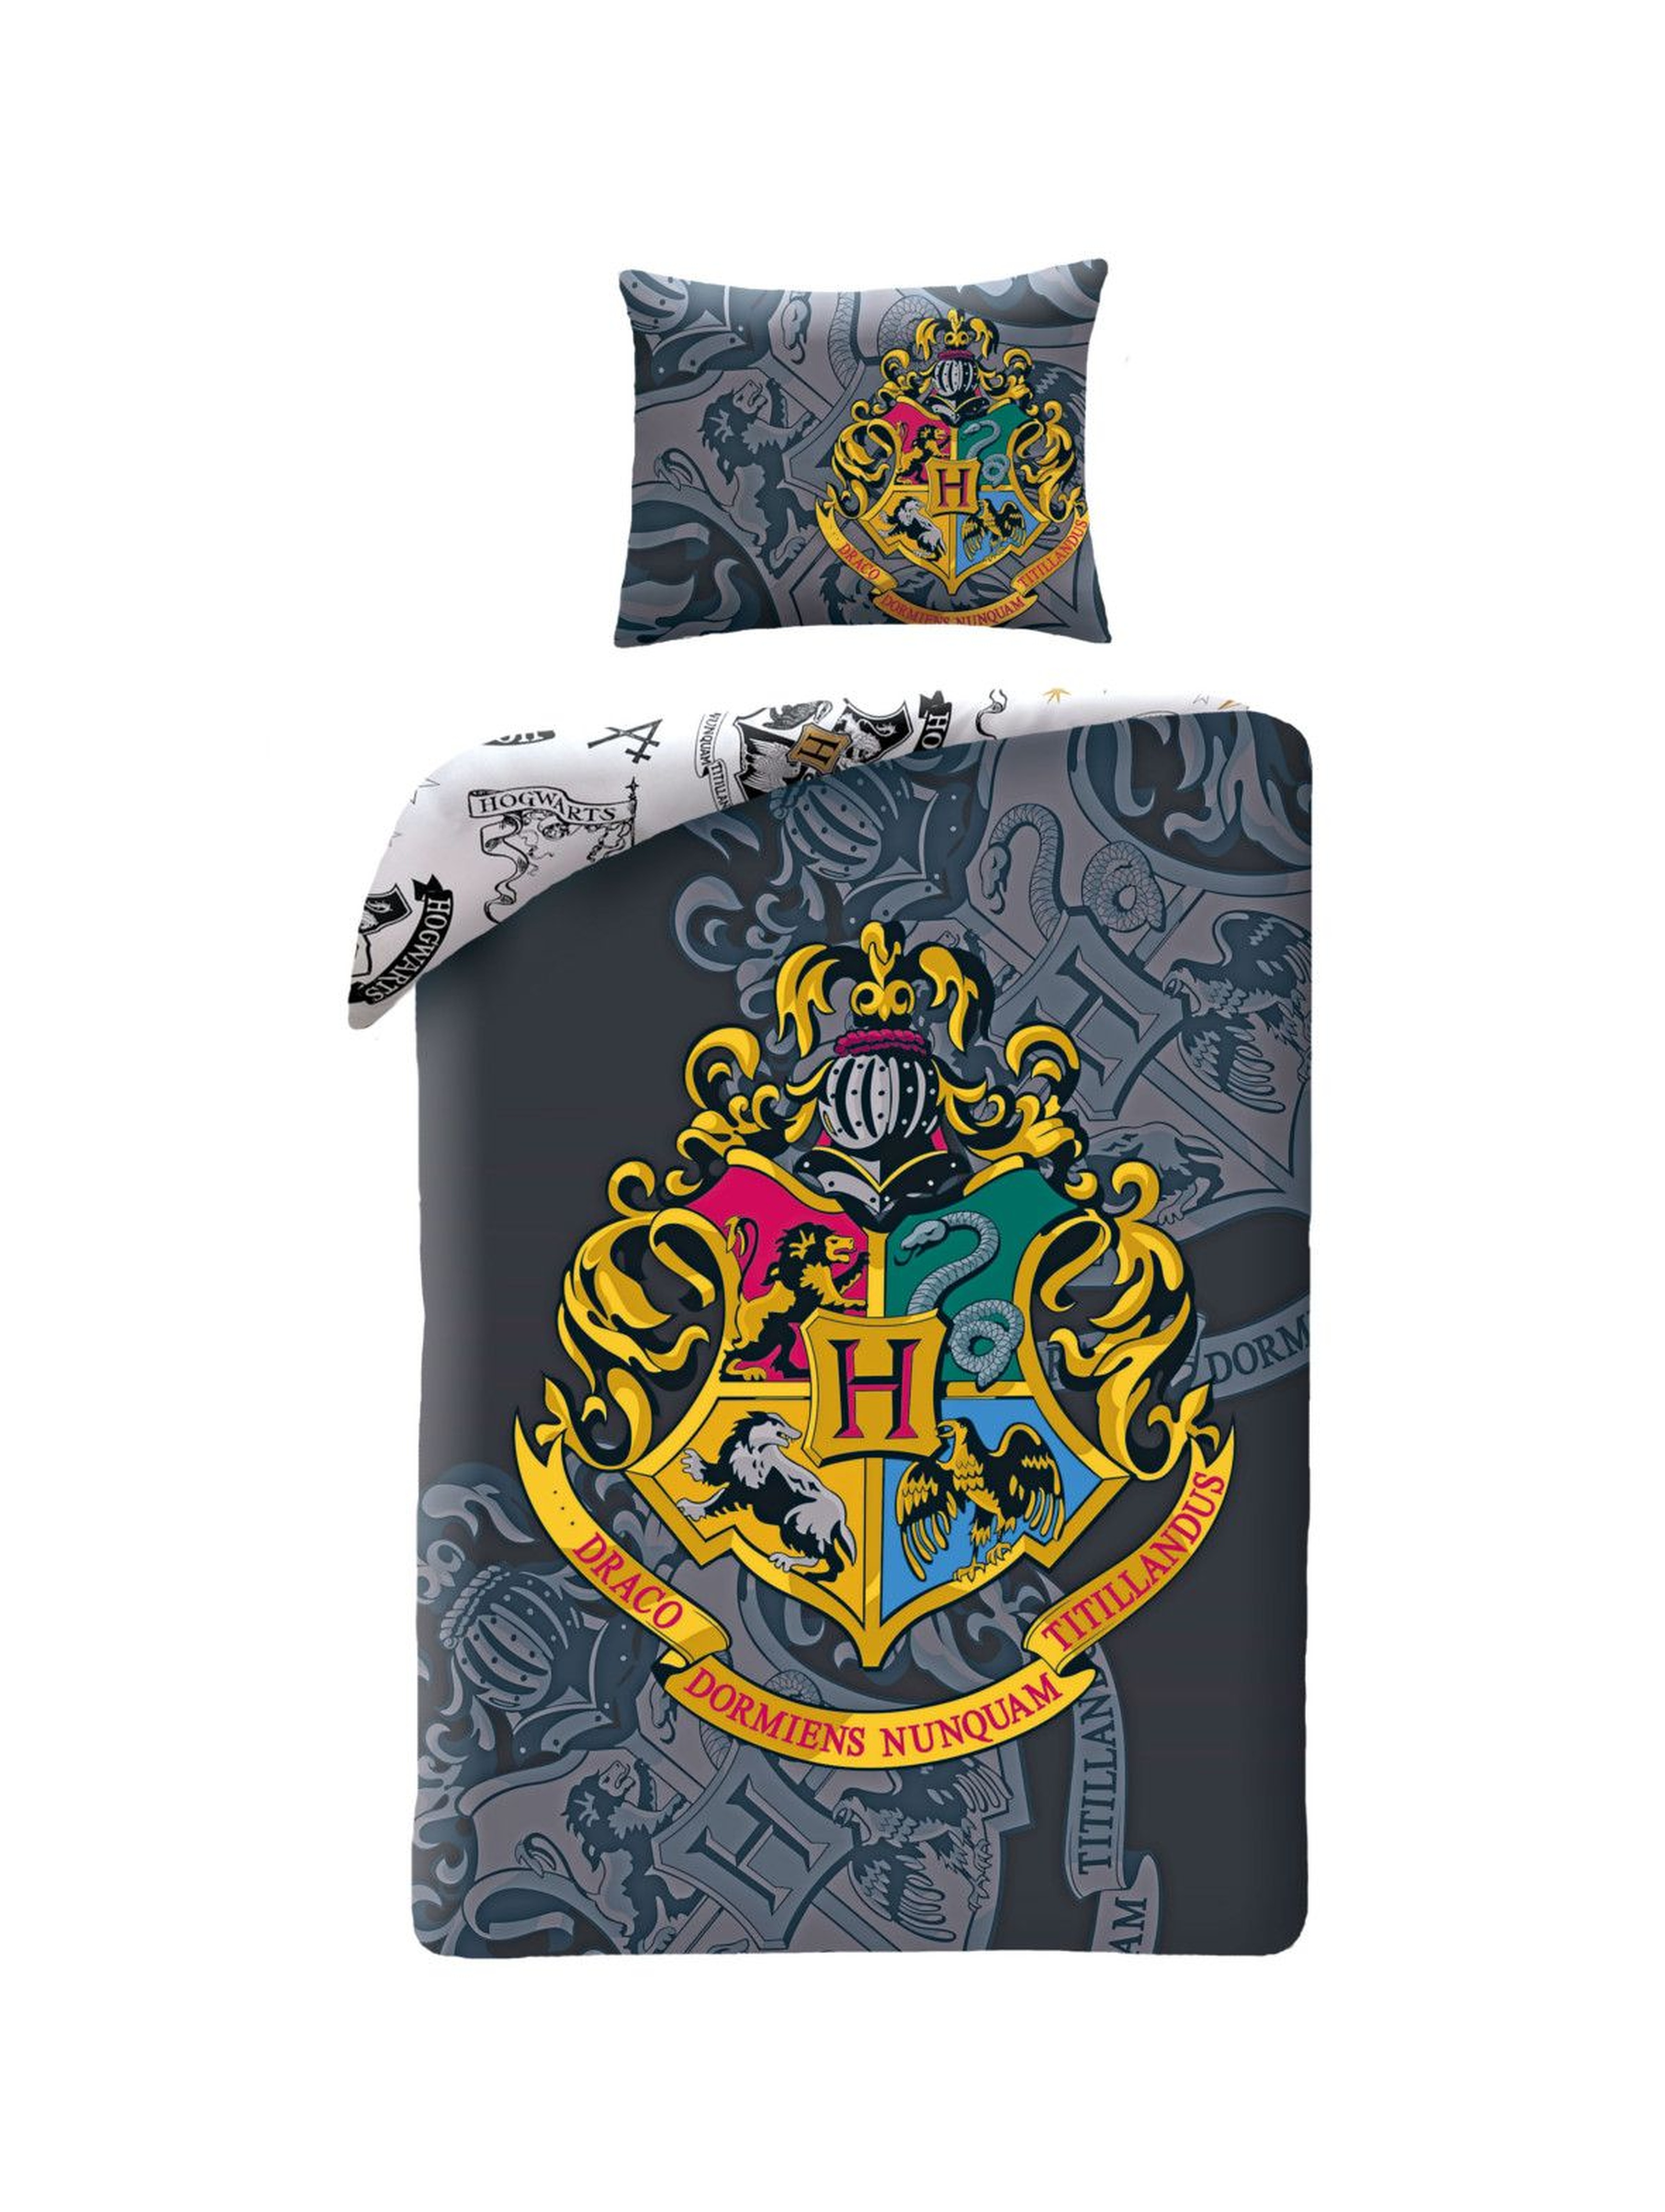 Pościel- poszewka na poduszkę i kołdrę -Harry Potter 140x200cm - 70x90cm